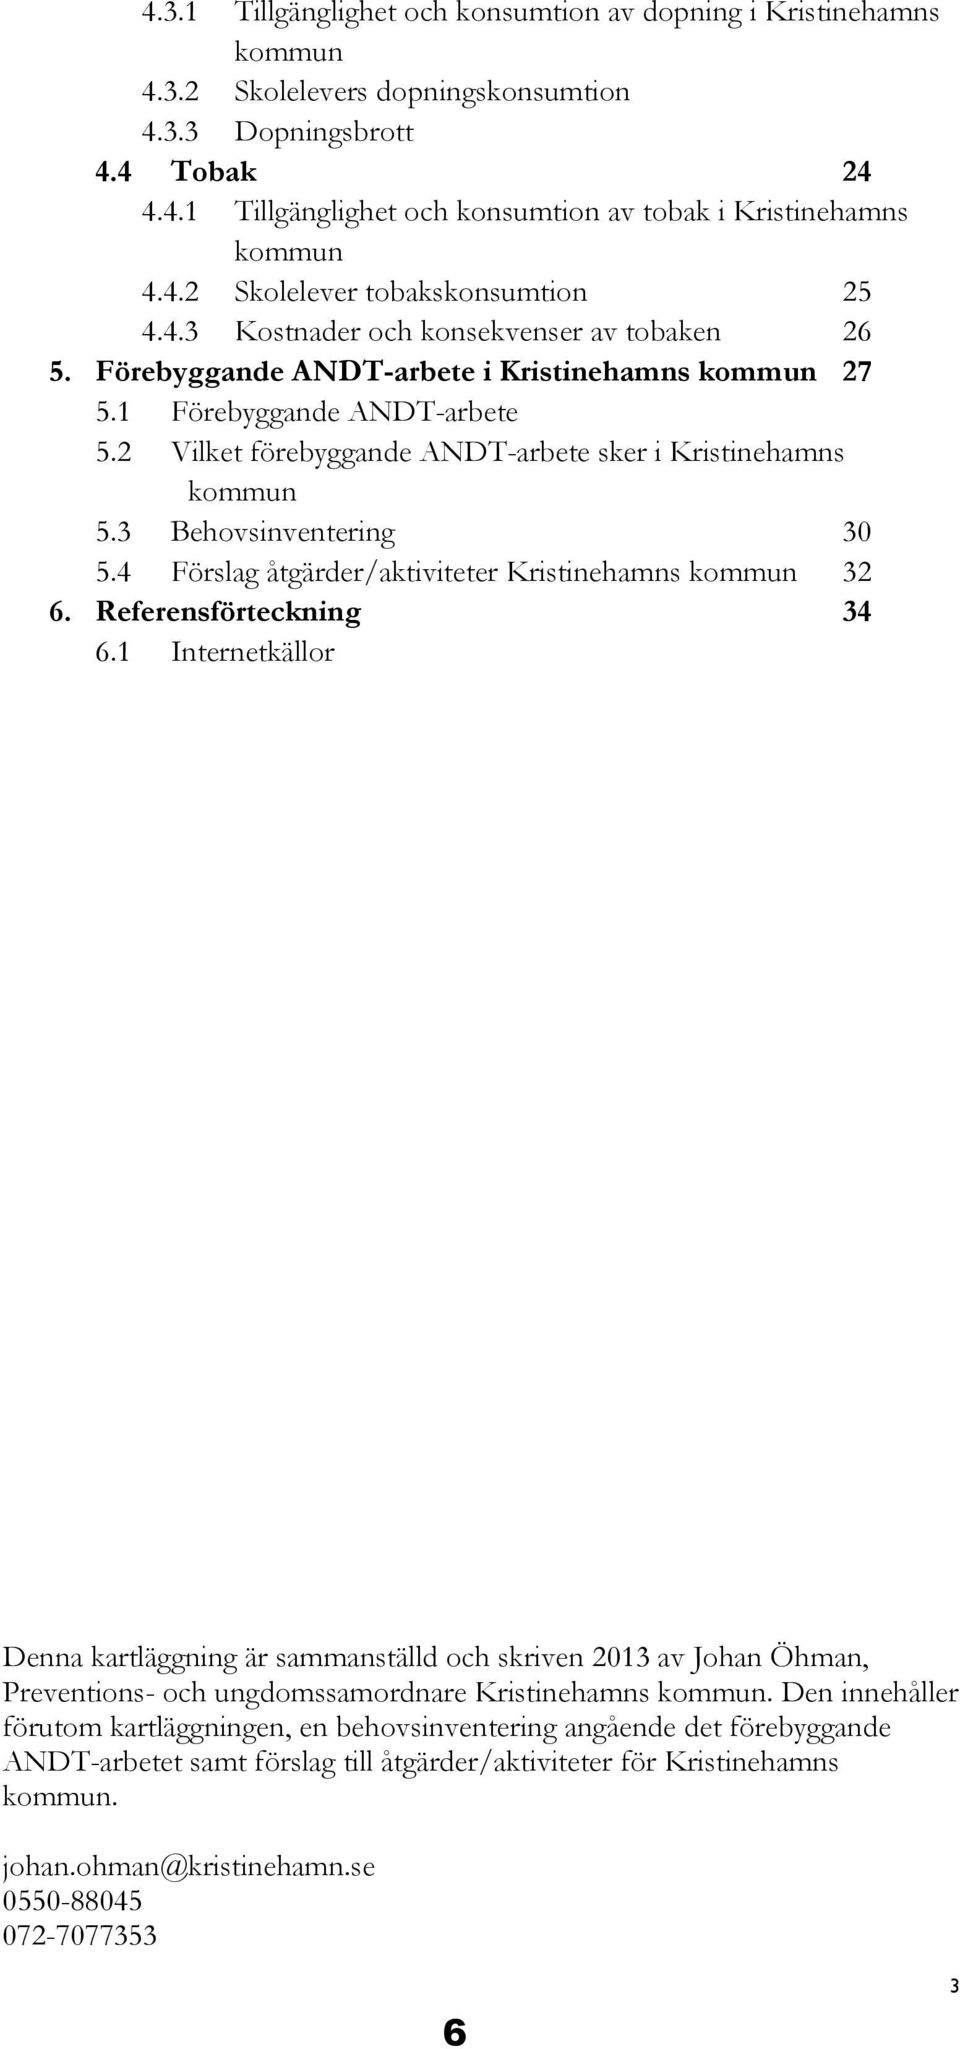 2 Vilket förebyggande ANDT-arbete sker i Kristinehamns kommun 5.3 Behovsinventering 30 5.4 Förslag åtgärder/aktiviteter Kristinehamns kommun 32 6. Referensförteckning 34 6.